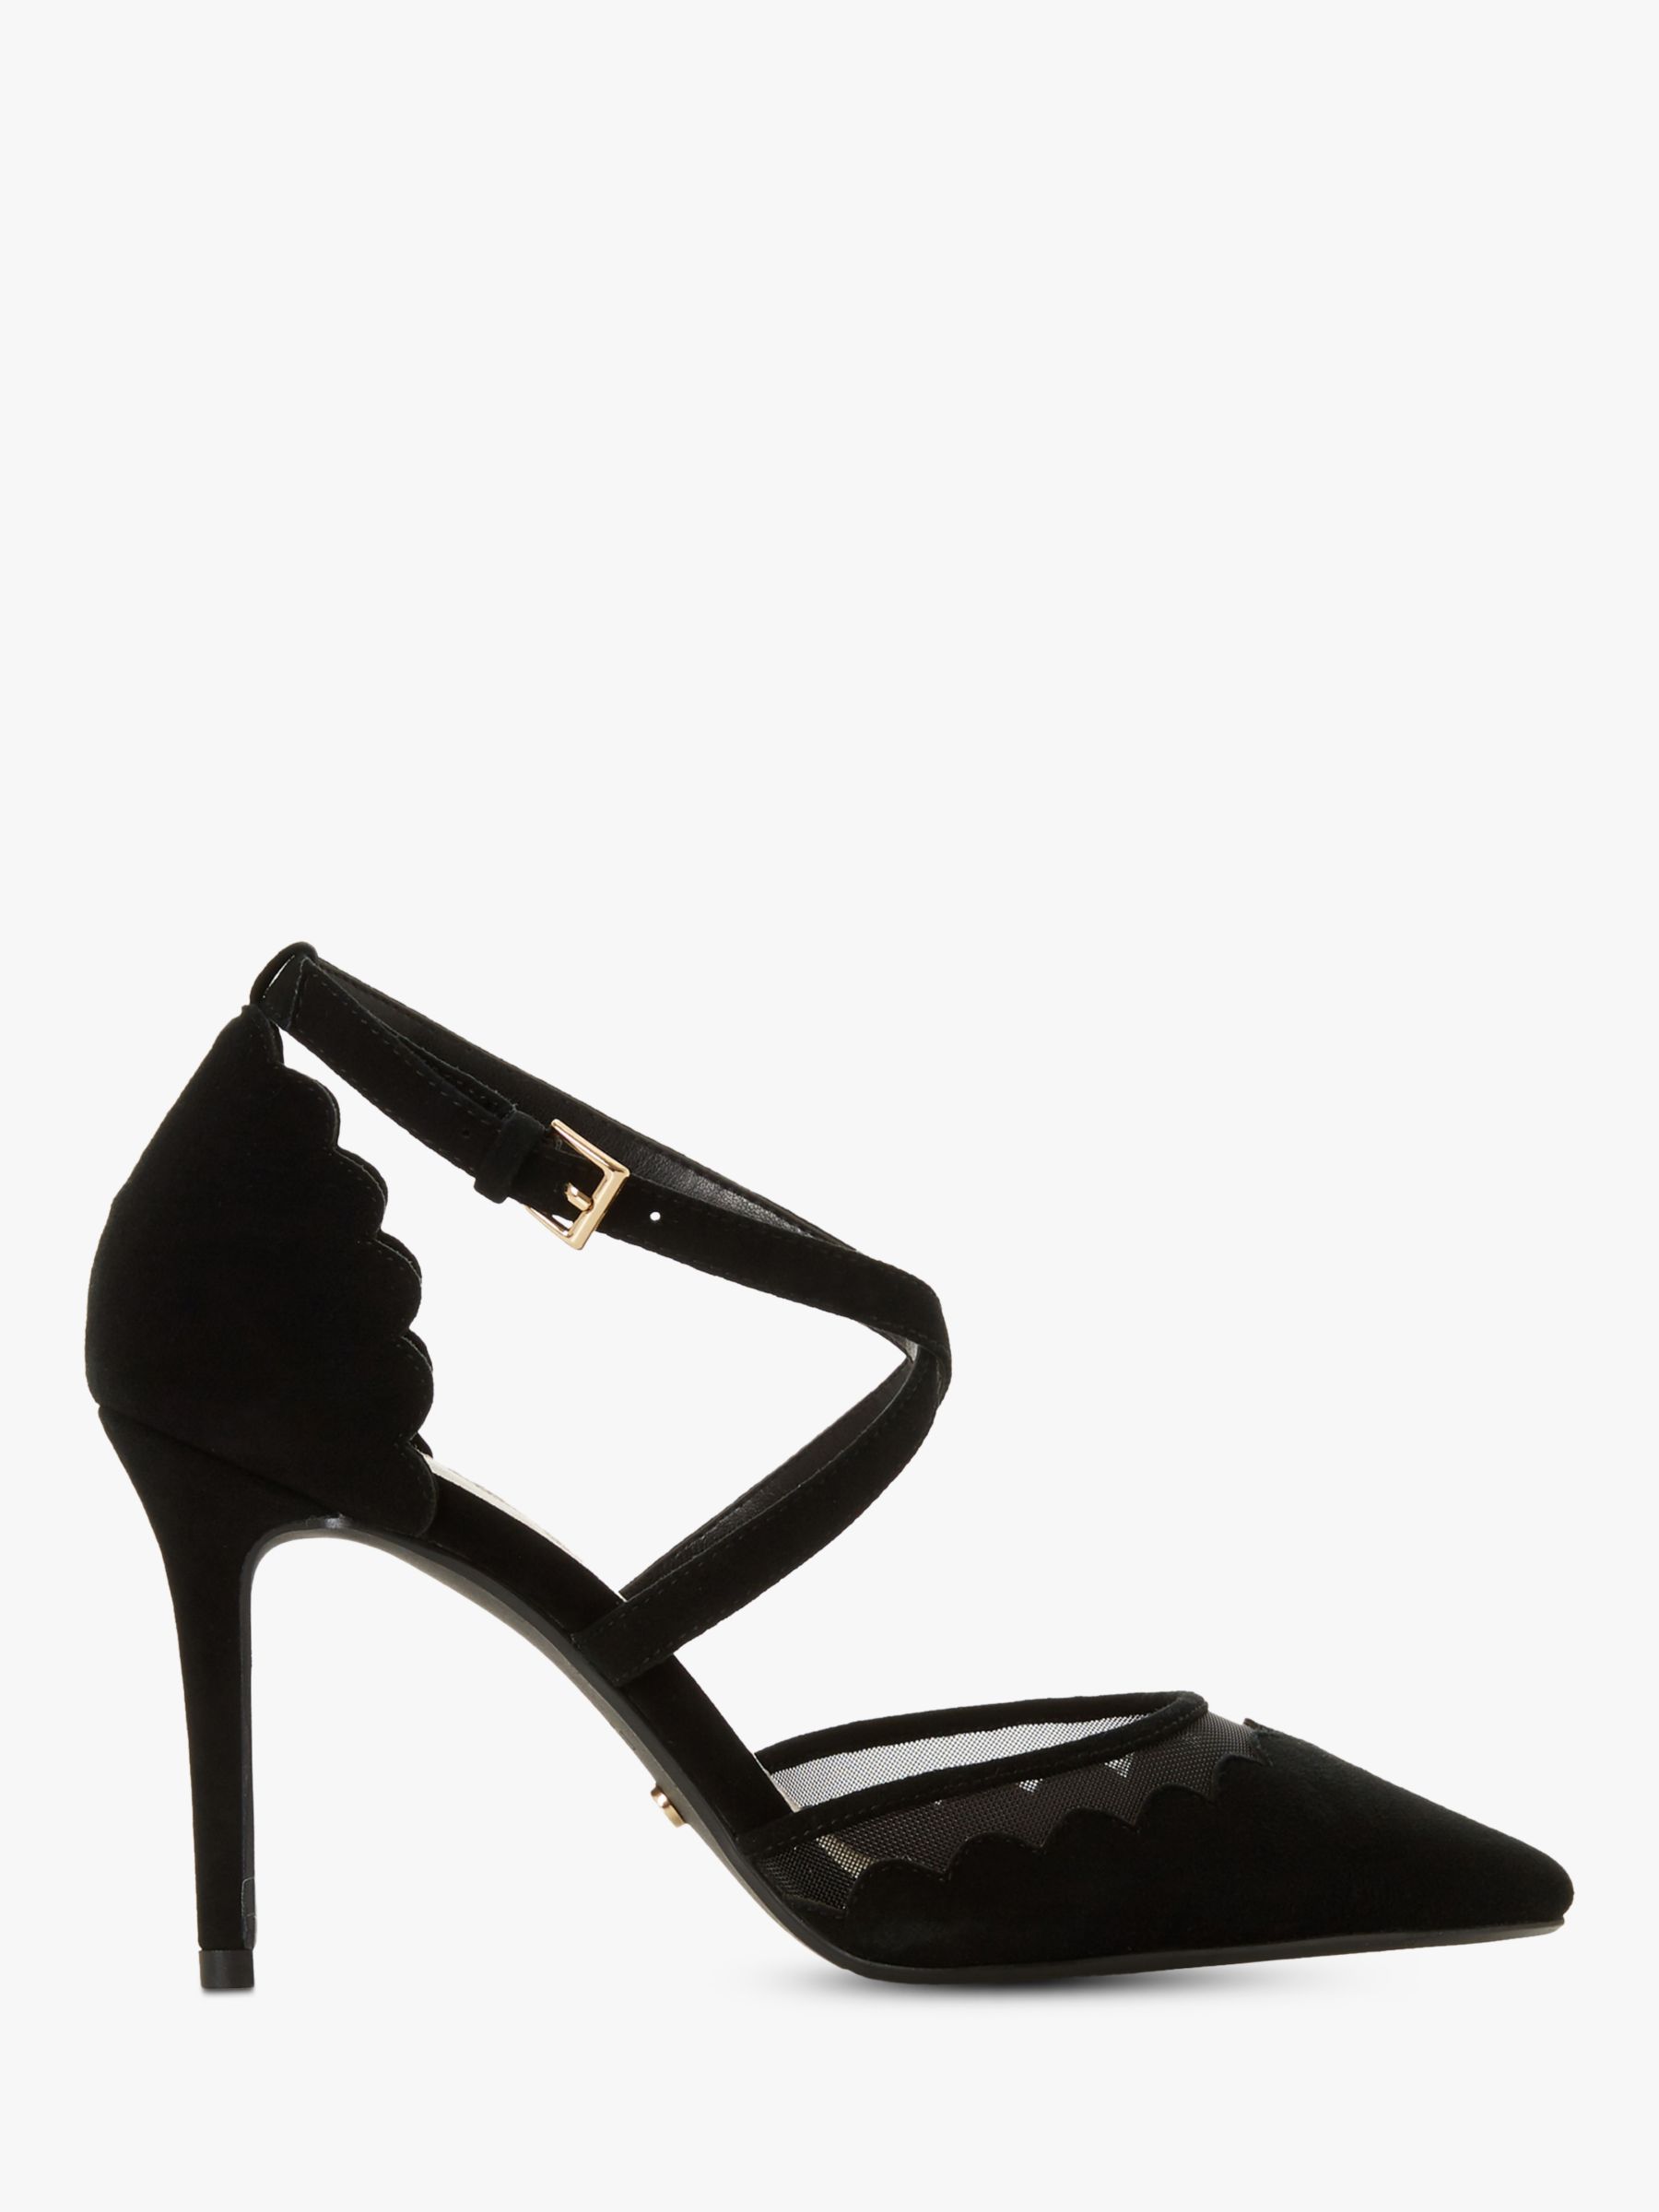 dune black high heels